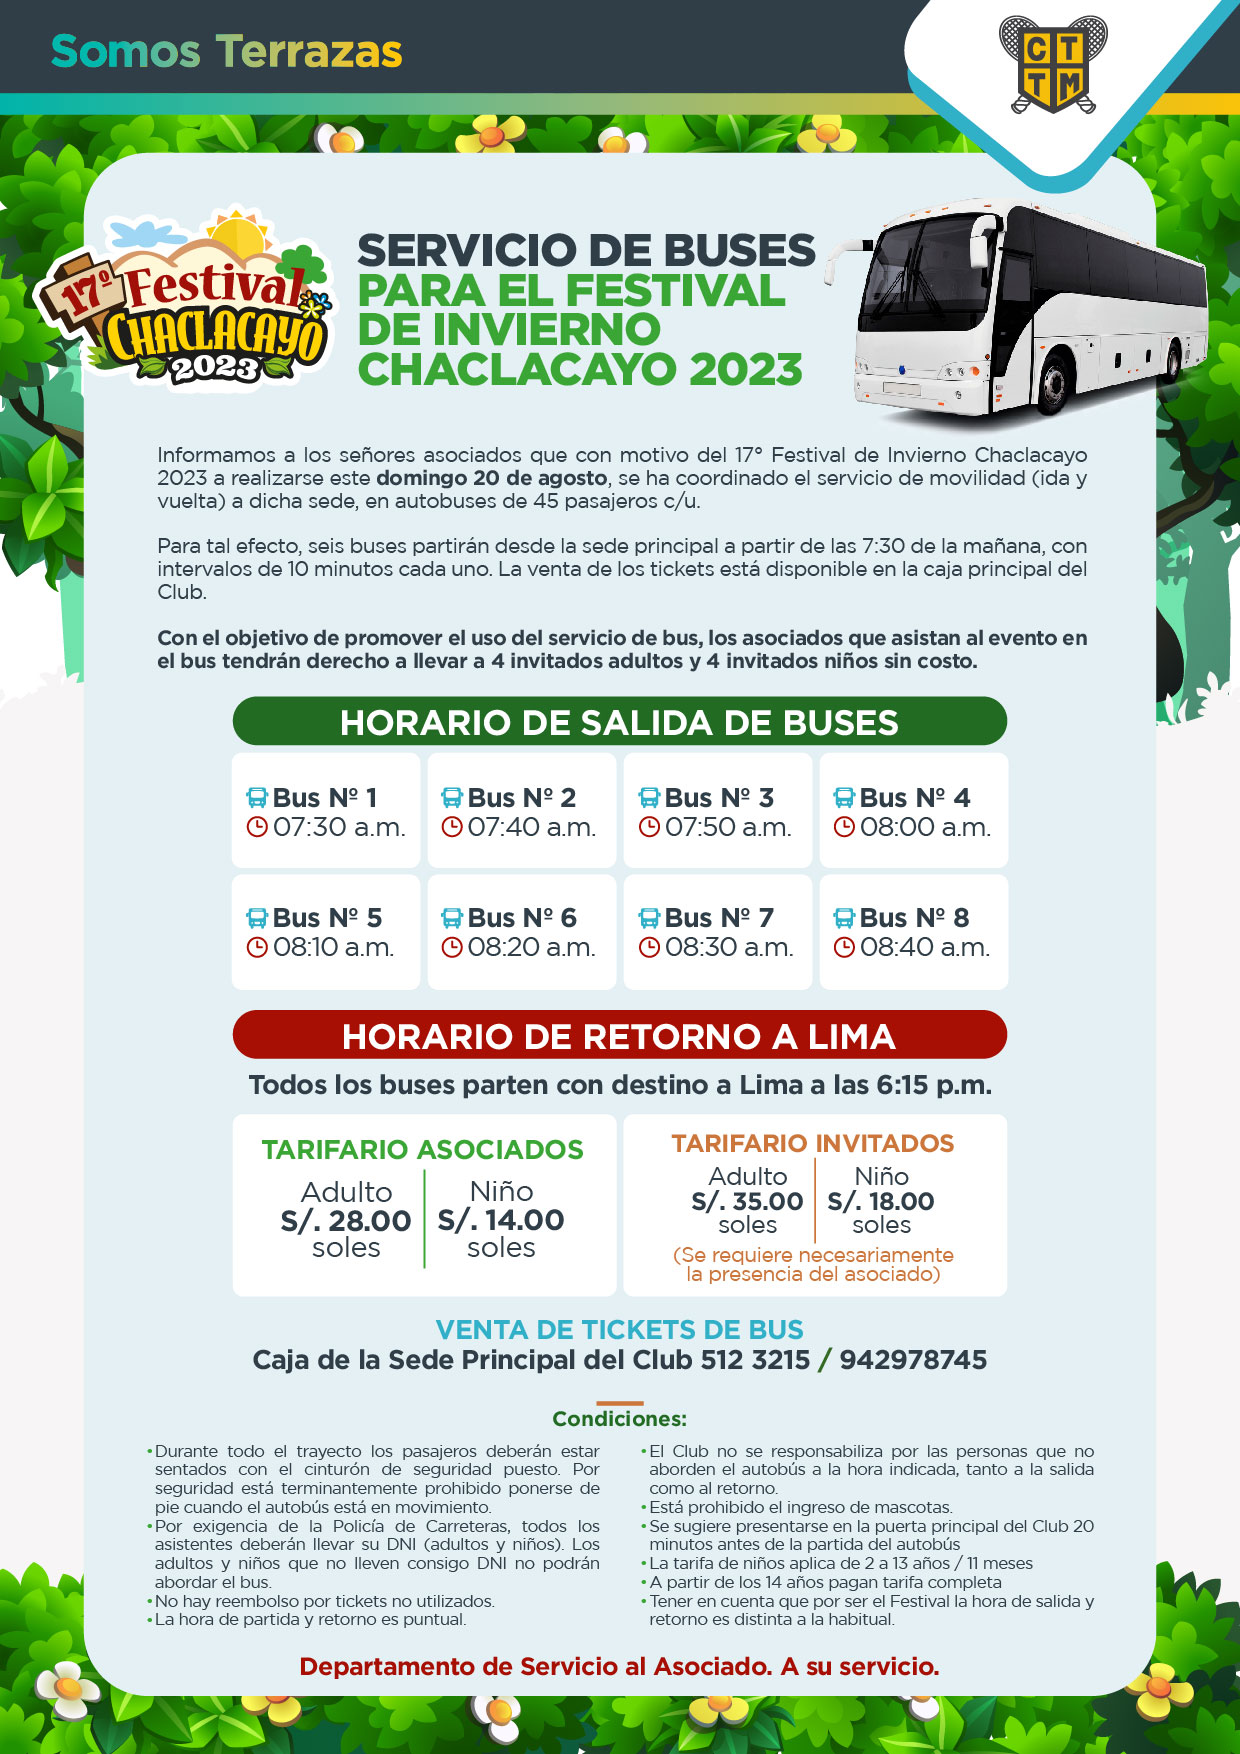 SERVICIO DE BUSES PARA EL FESTIVAL DE INVIERNO CHACLACAYO 2023